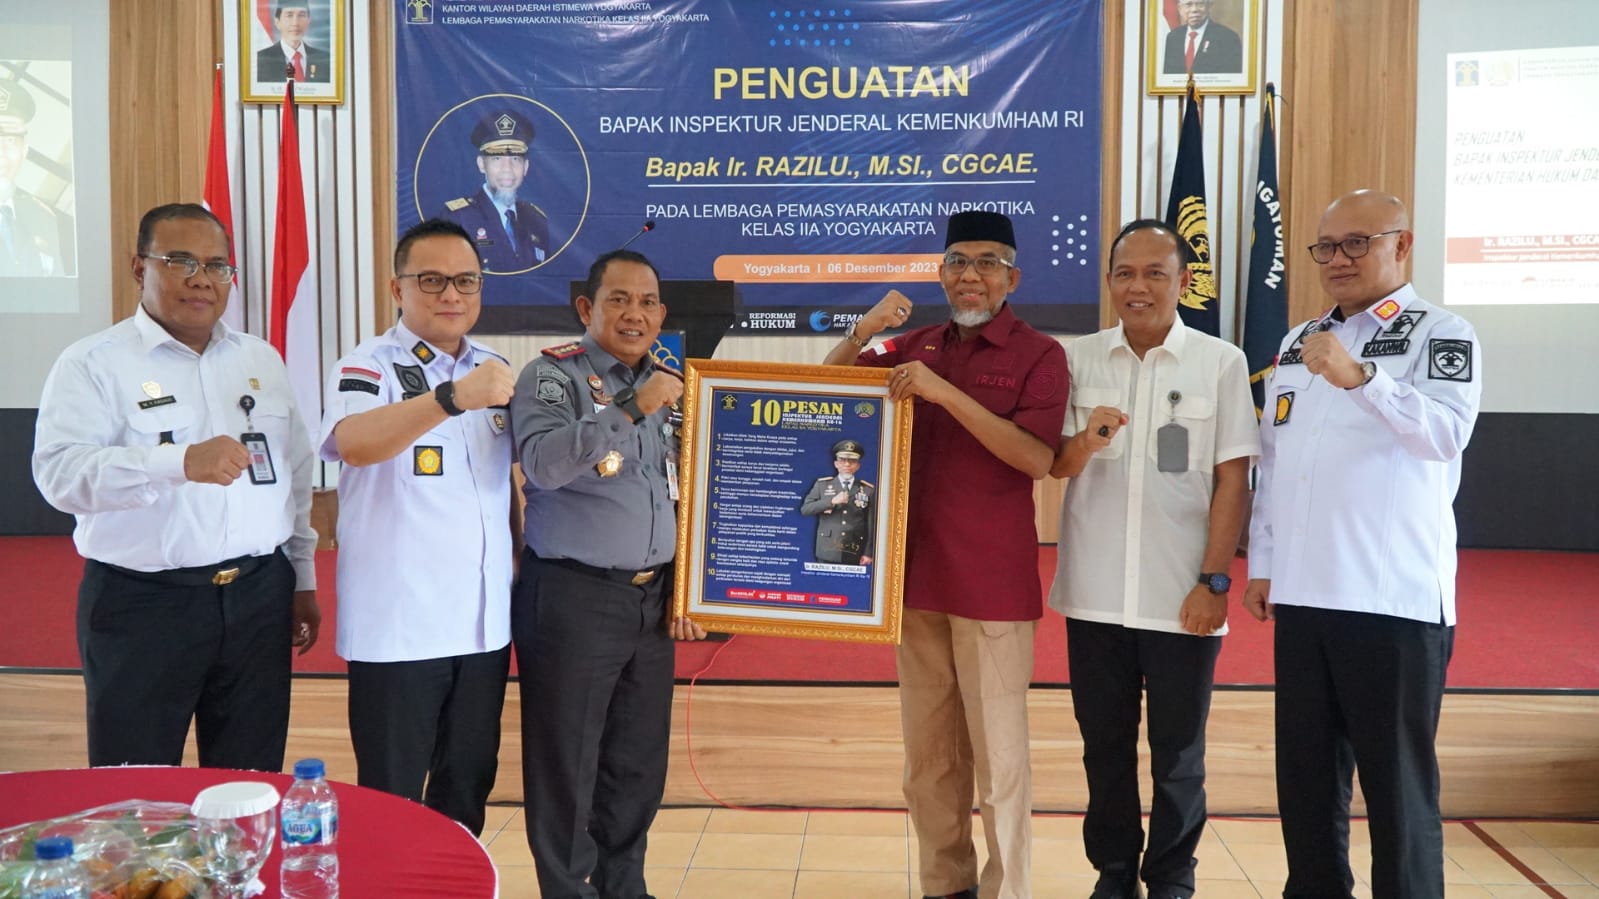 Kunjungi Lapas Narkotika Yogyakarta, Inspektur Jenderal Sampaikan Pesan Pentingnya Integritas dan Inovasi